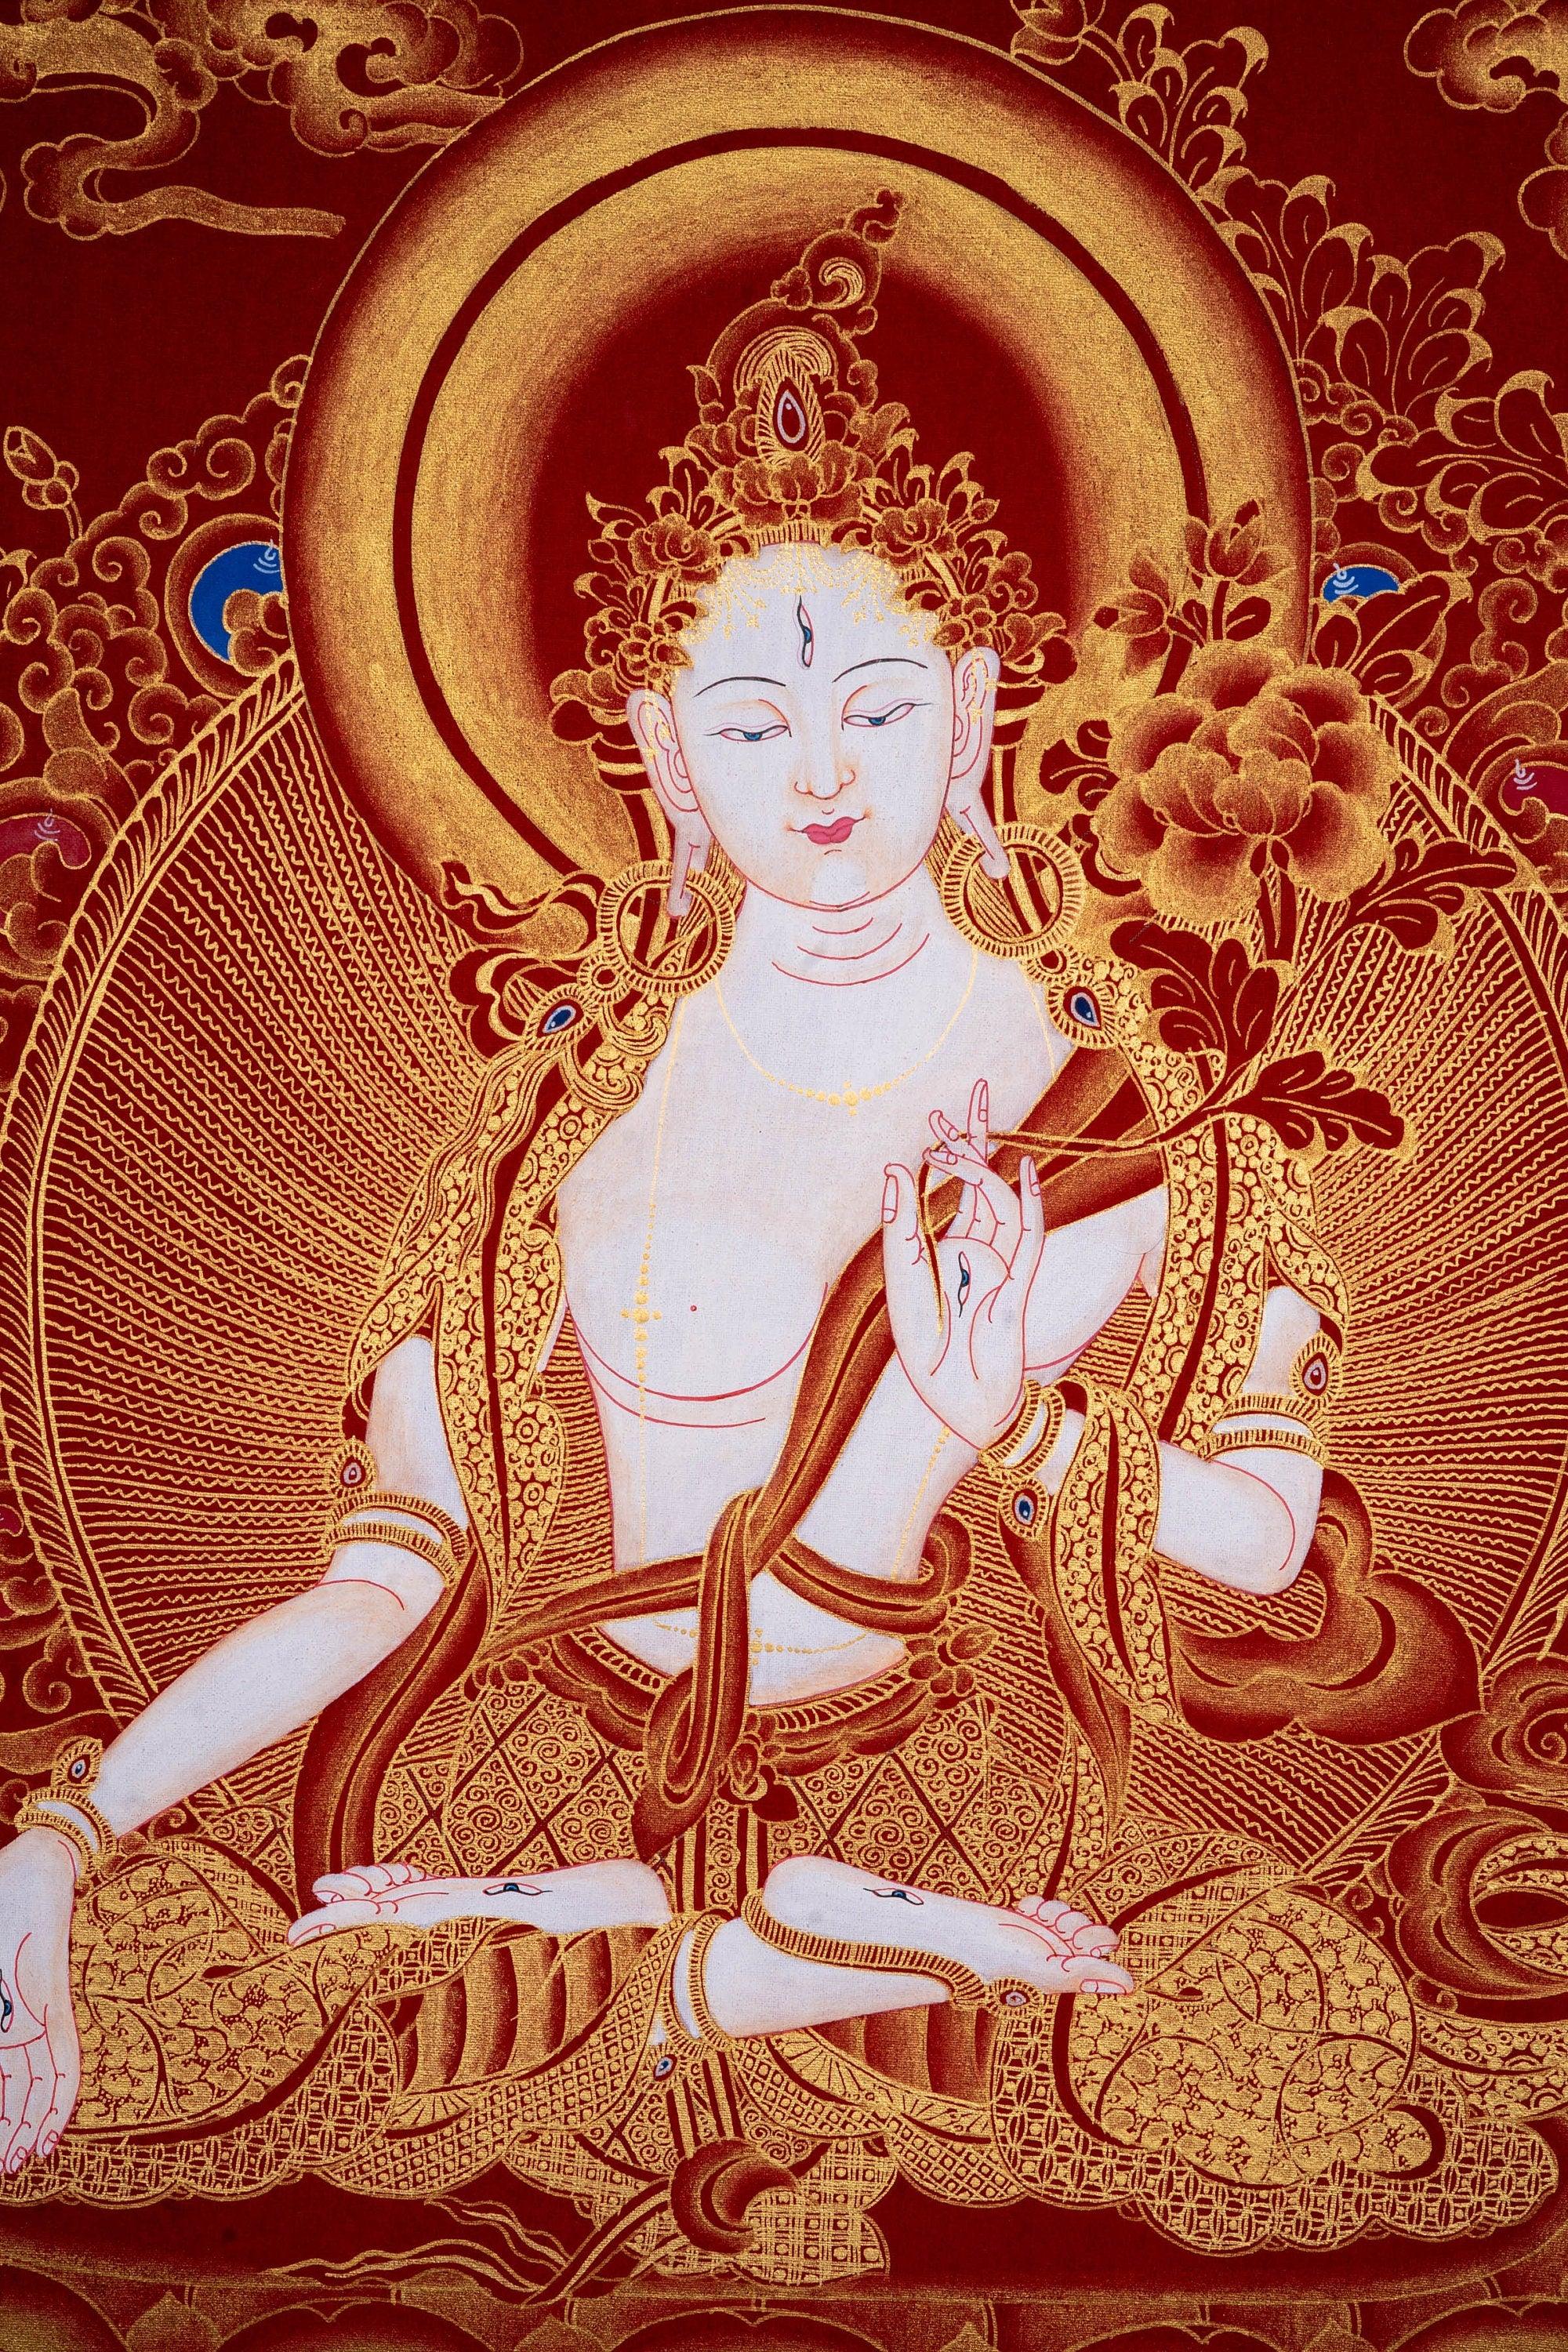 White Tara Thangka Painting Art from Nepal - Himalayas Shop